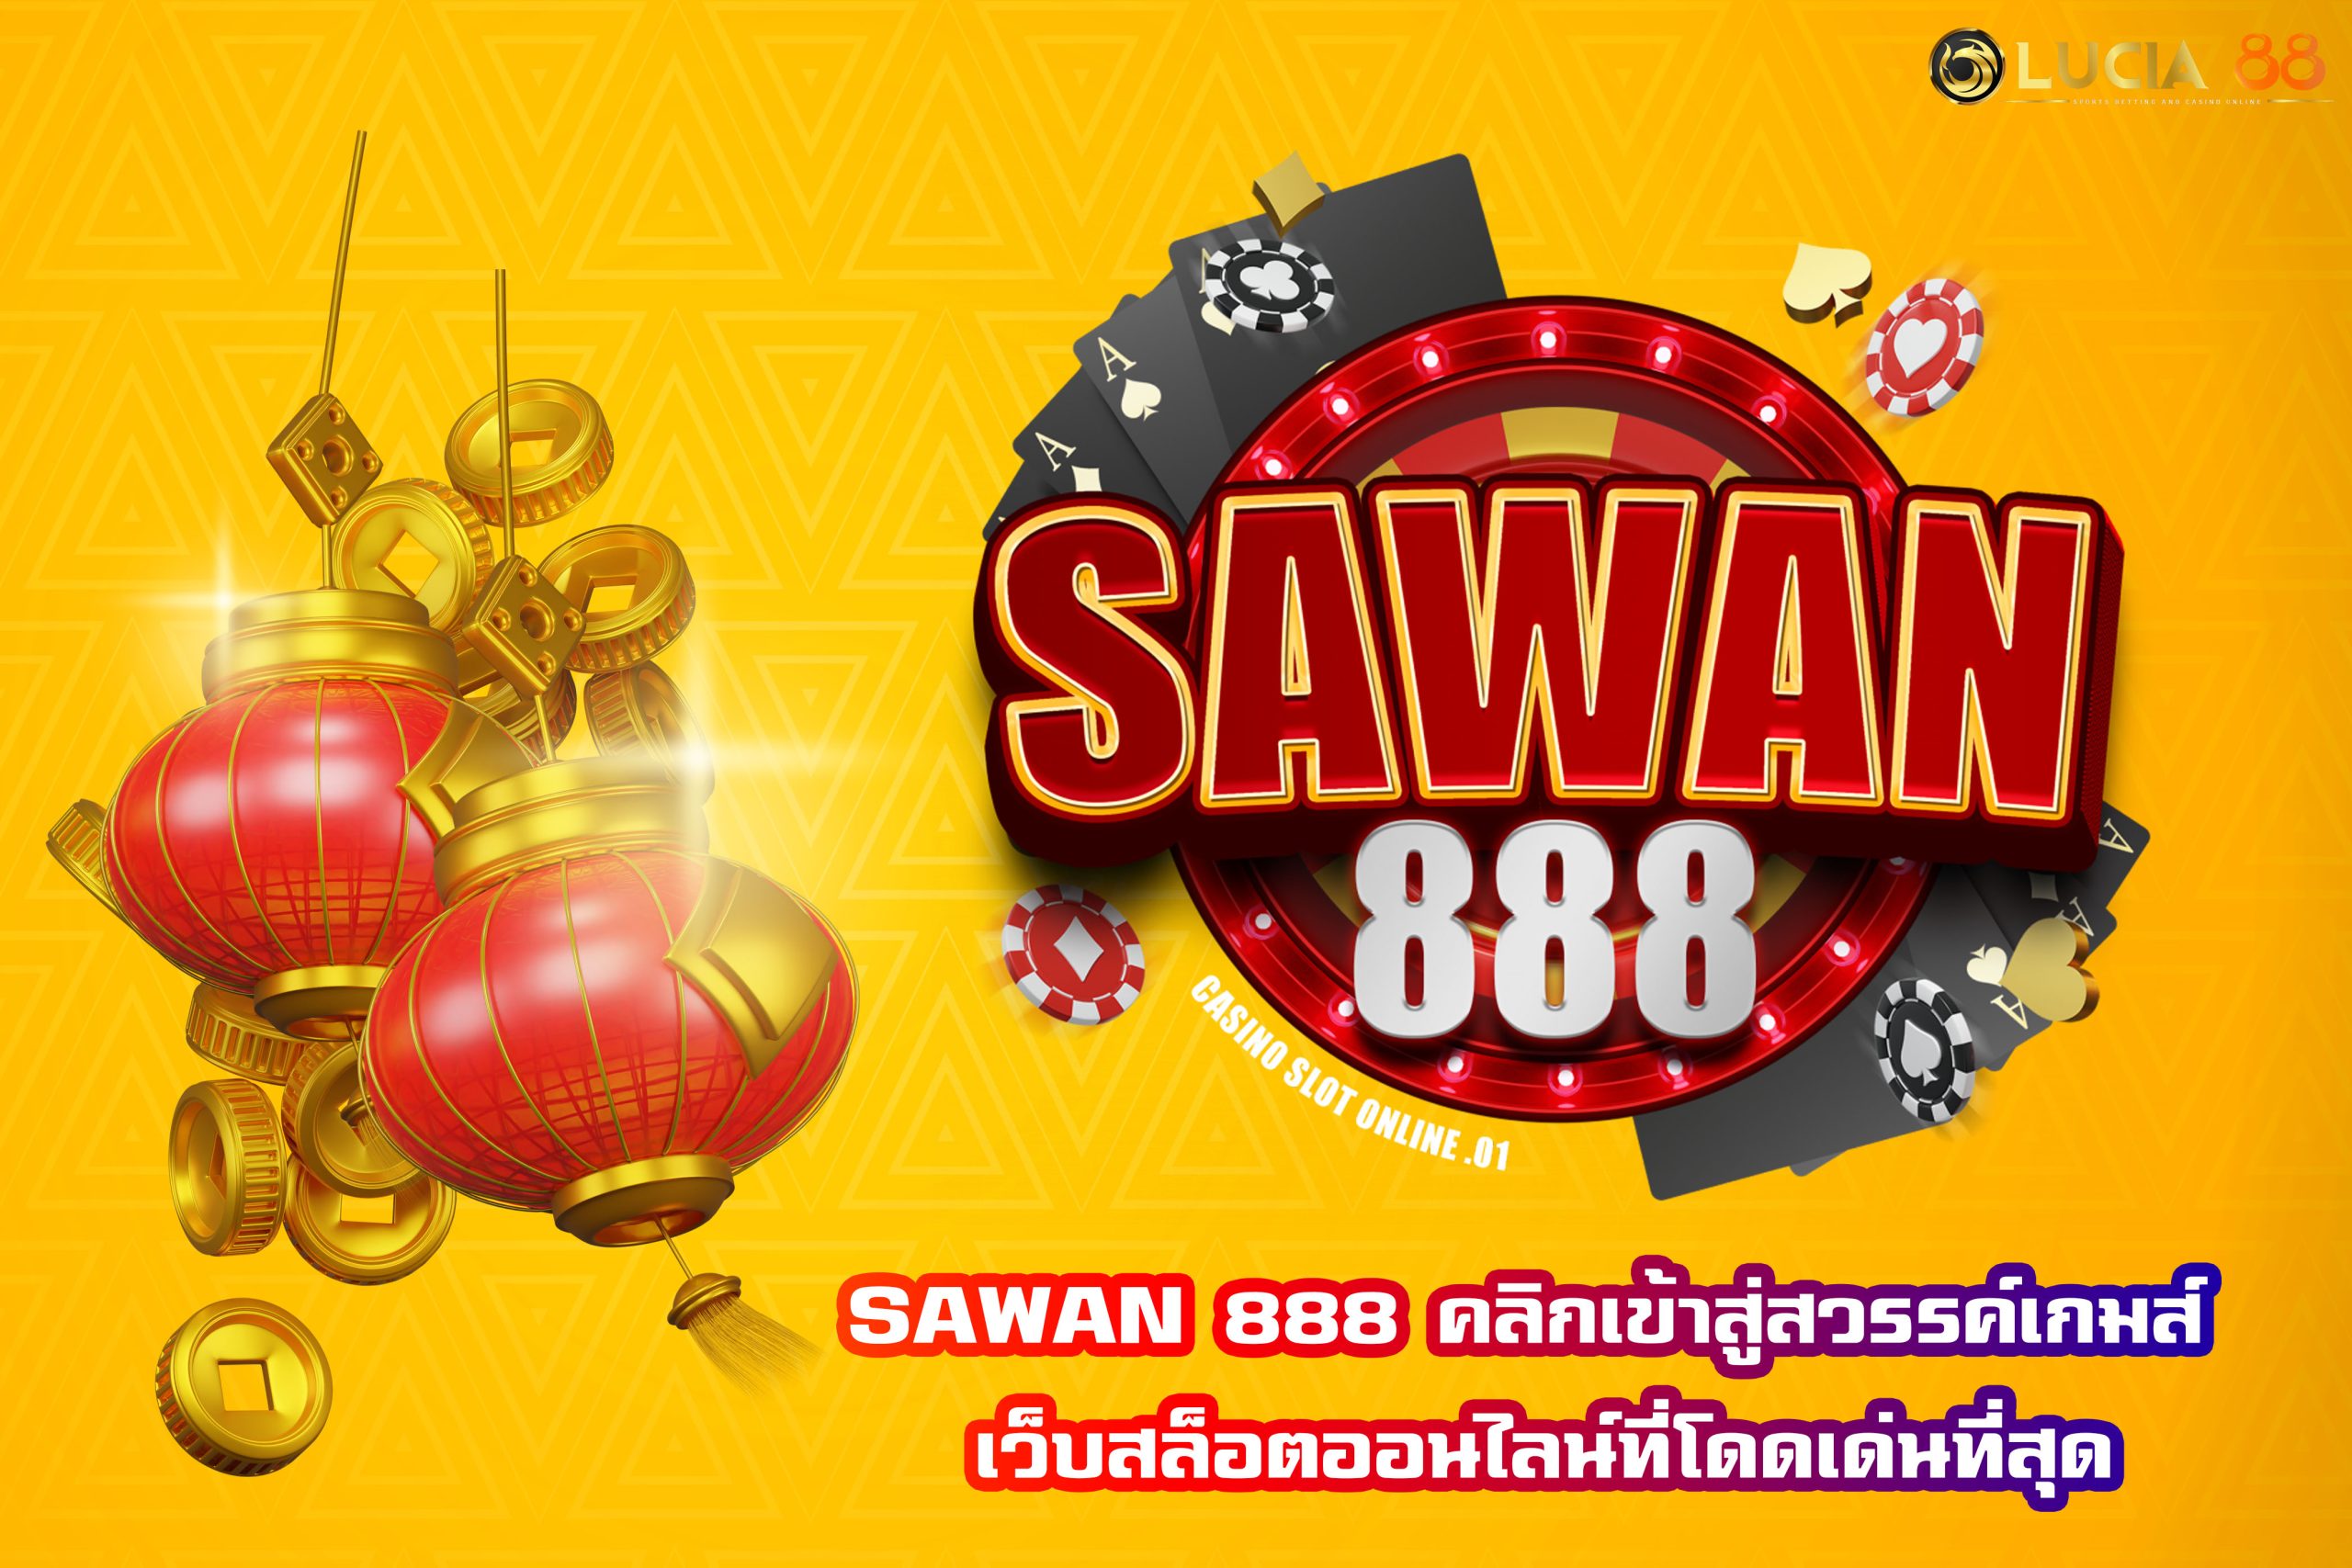 SAWAN 888 คลิกเข้าสู่สวรรค์เกมส์ เว็บสล็อตออนไลน์ที่โดดเด่นที่สุด